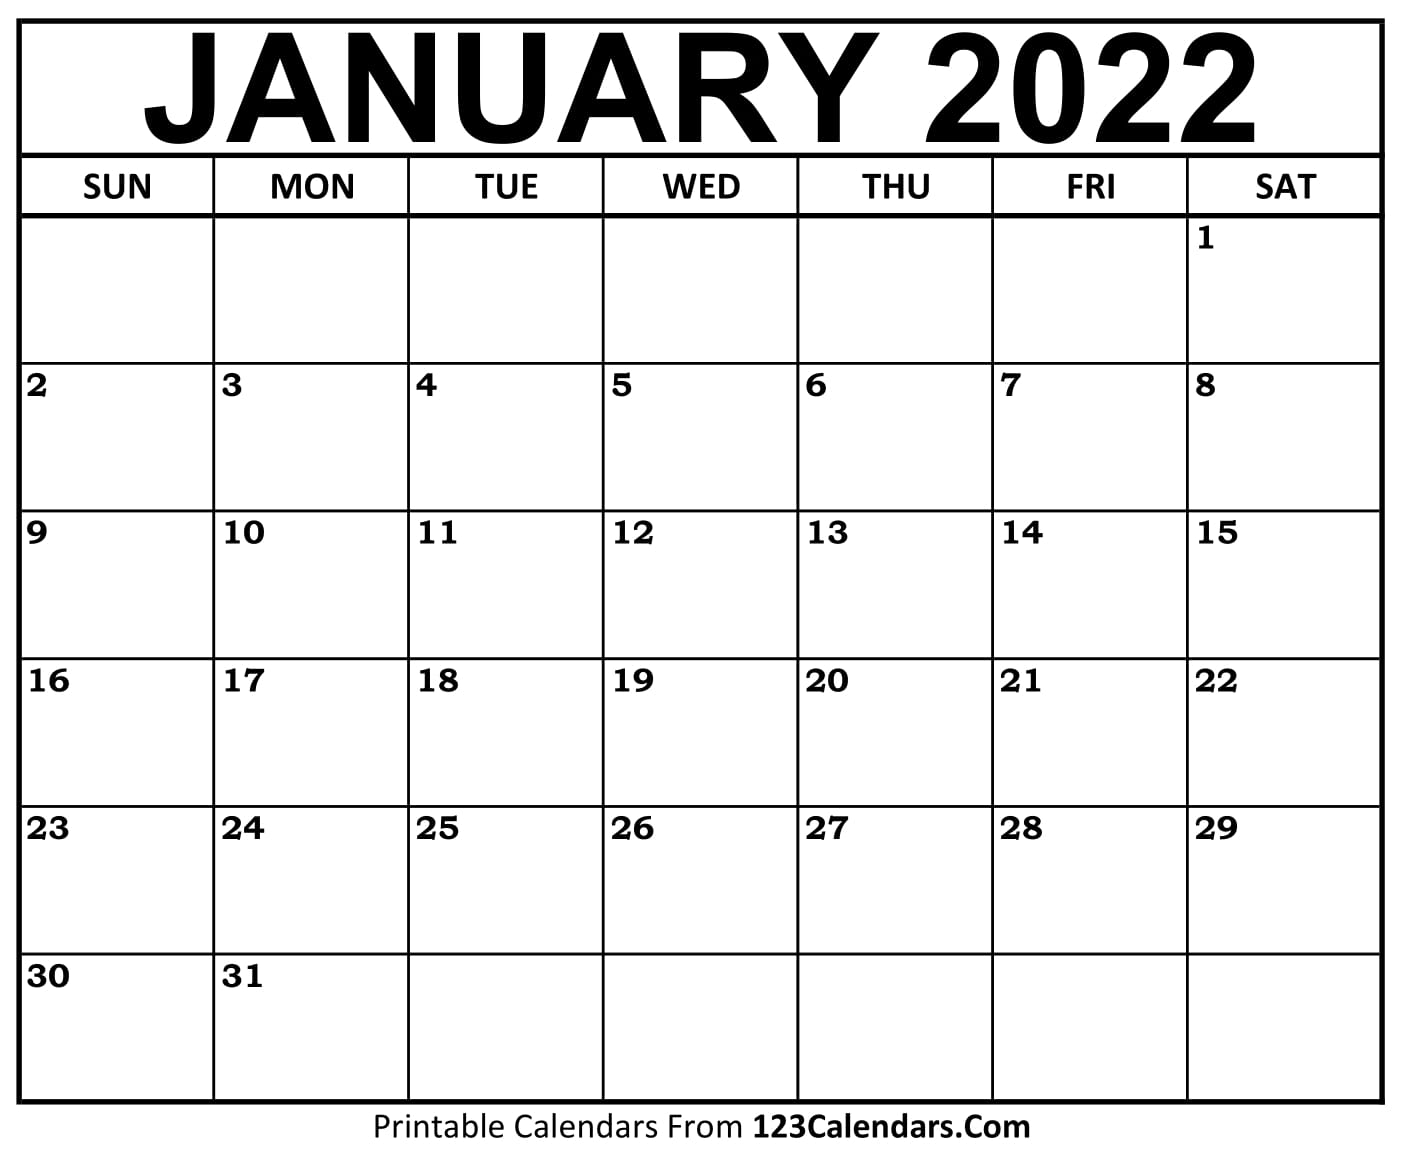 Free Calendar January 2022 Printable January 2022 Calendar Templates - 123Calendars.com